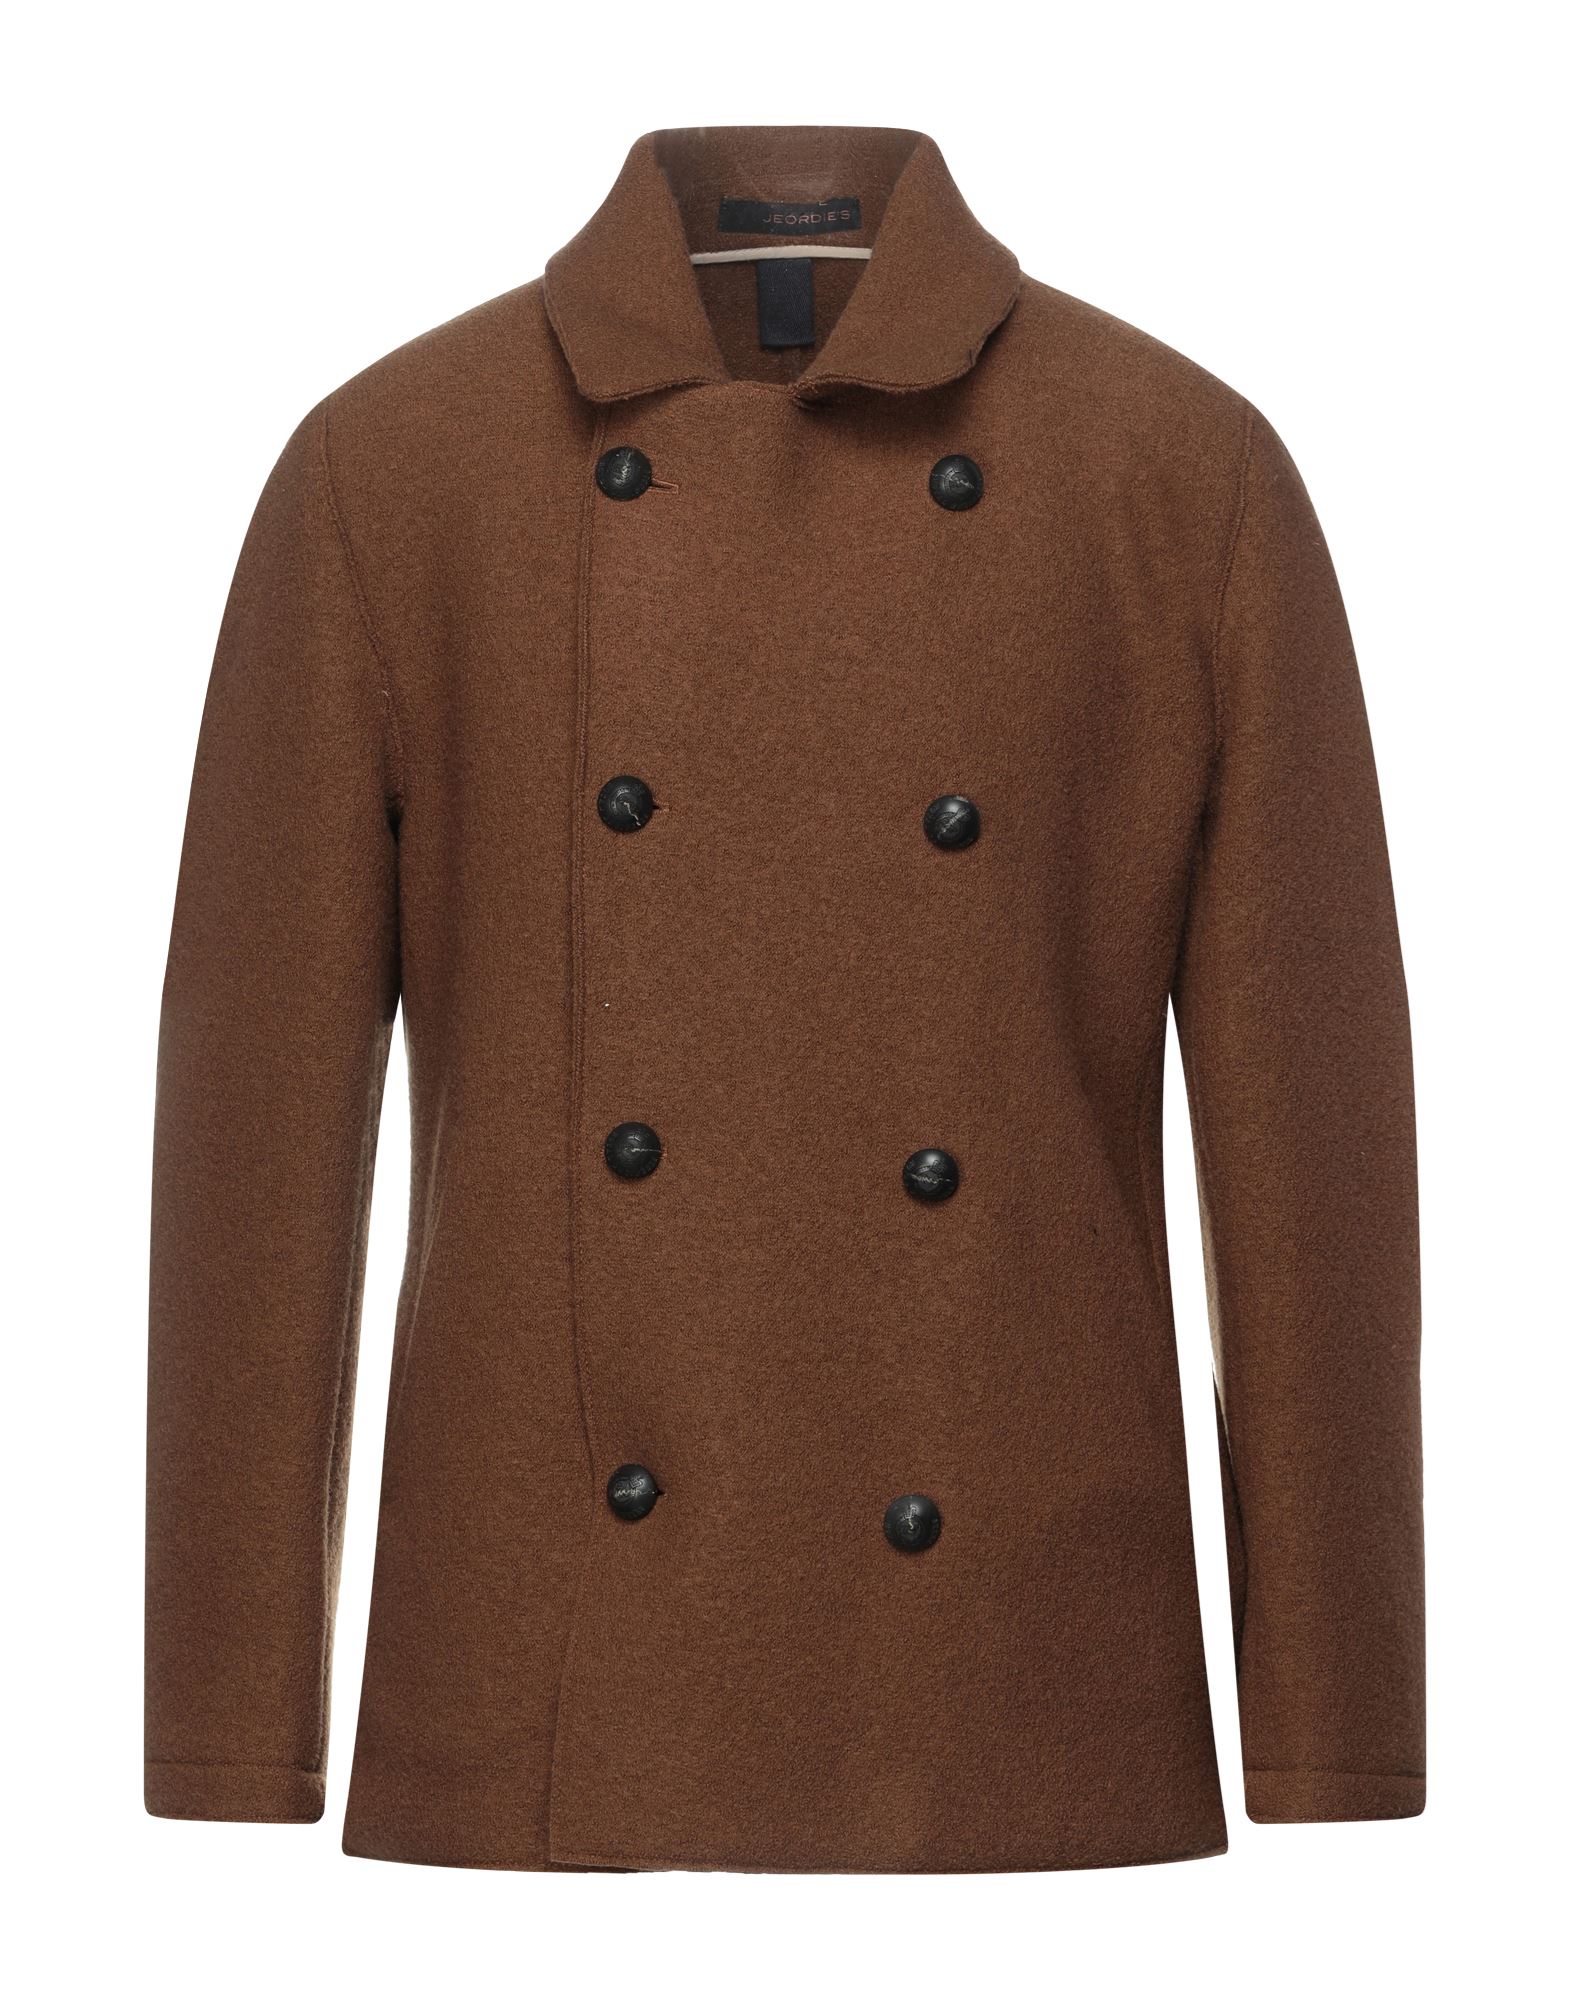 Jeordie's Coats In Brown